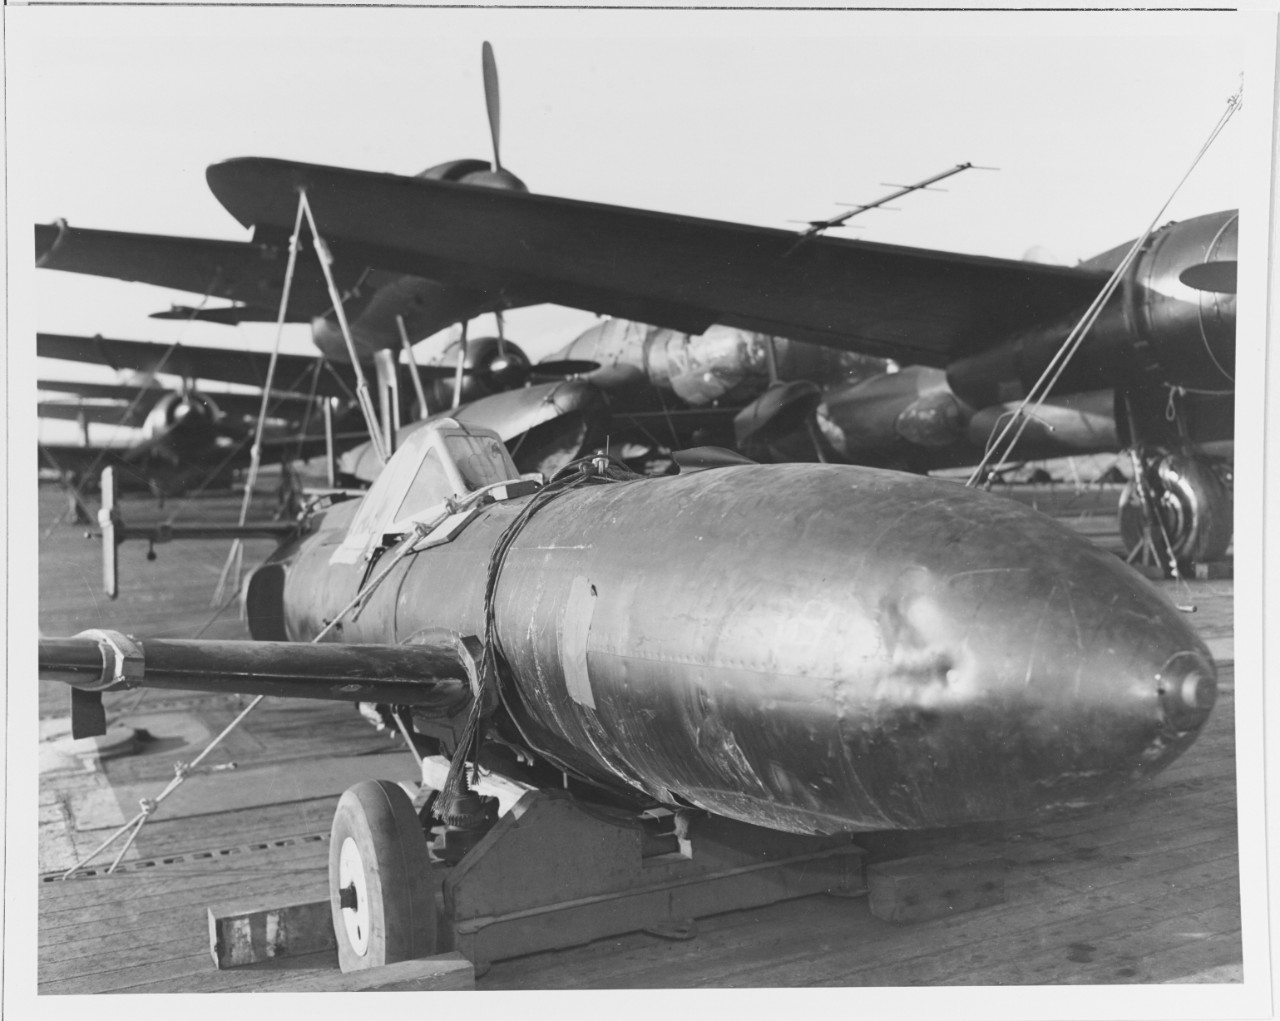 Japanese "Baka" flying bomb